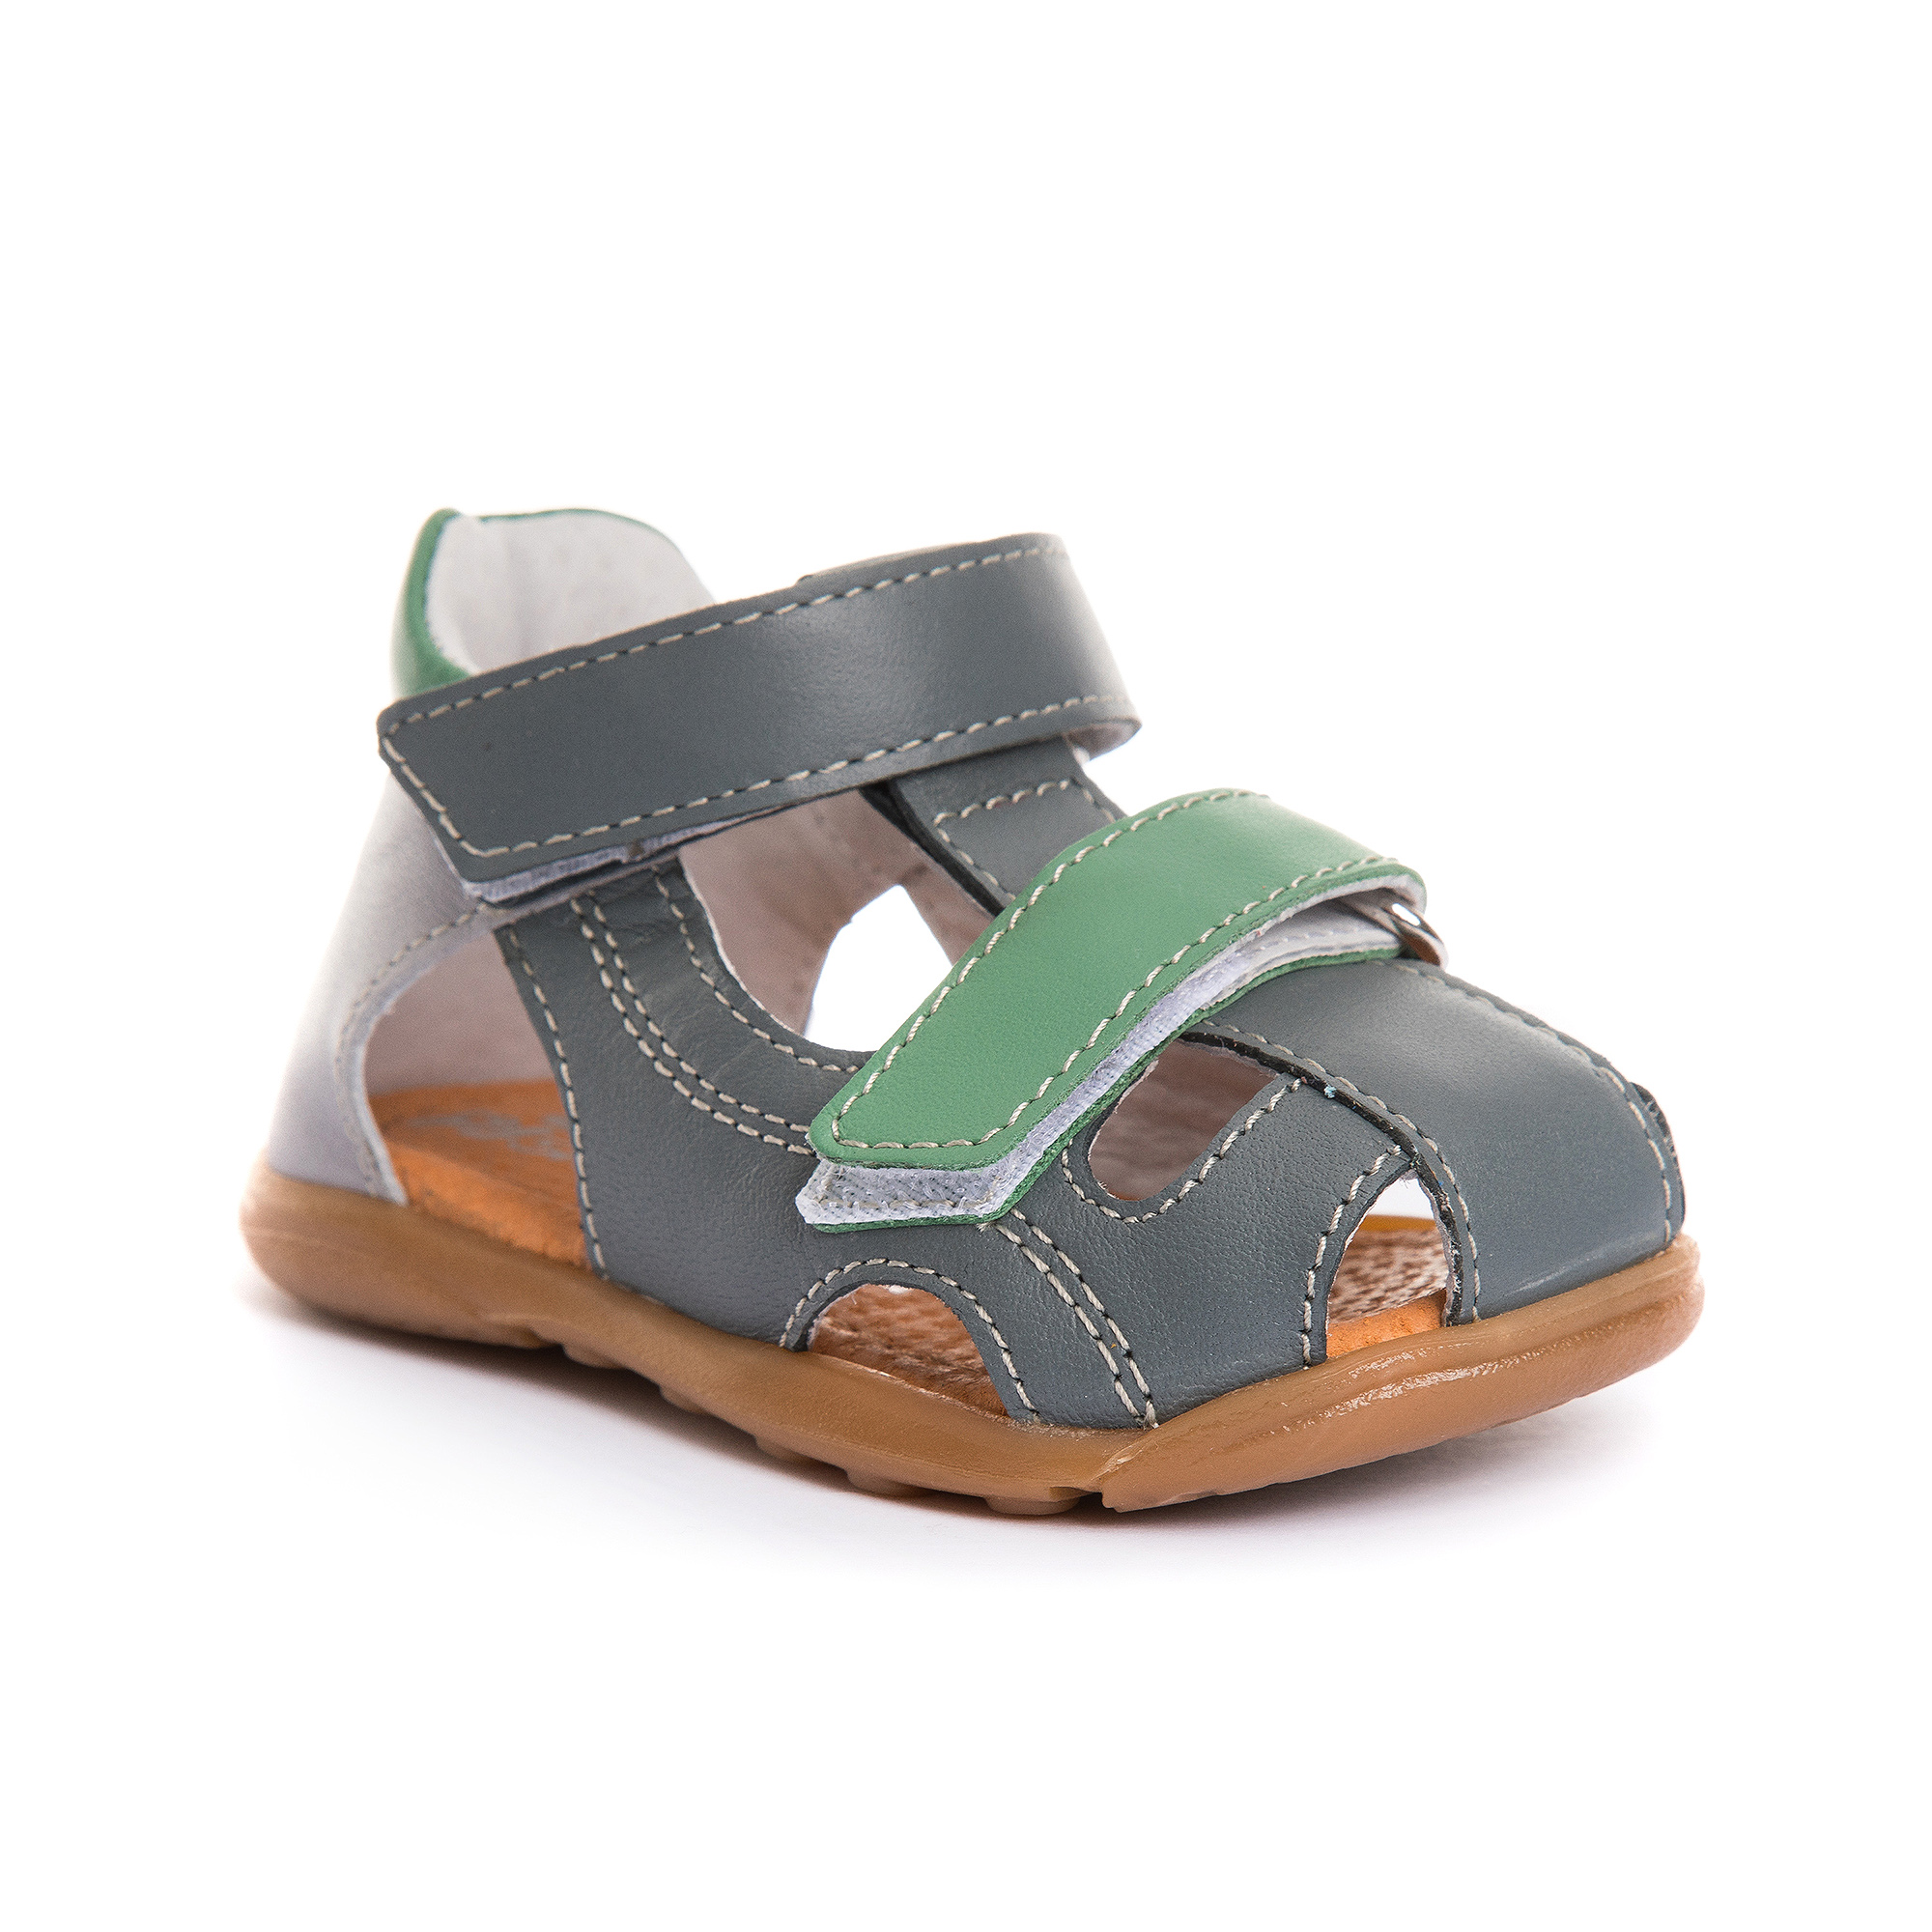 Implement Roasted Perforate Sandale din piele cu talonet pentru baieti - PJ Shoes - Incaltaminte copii